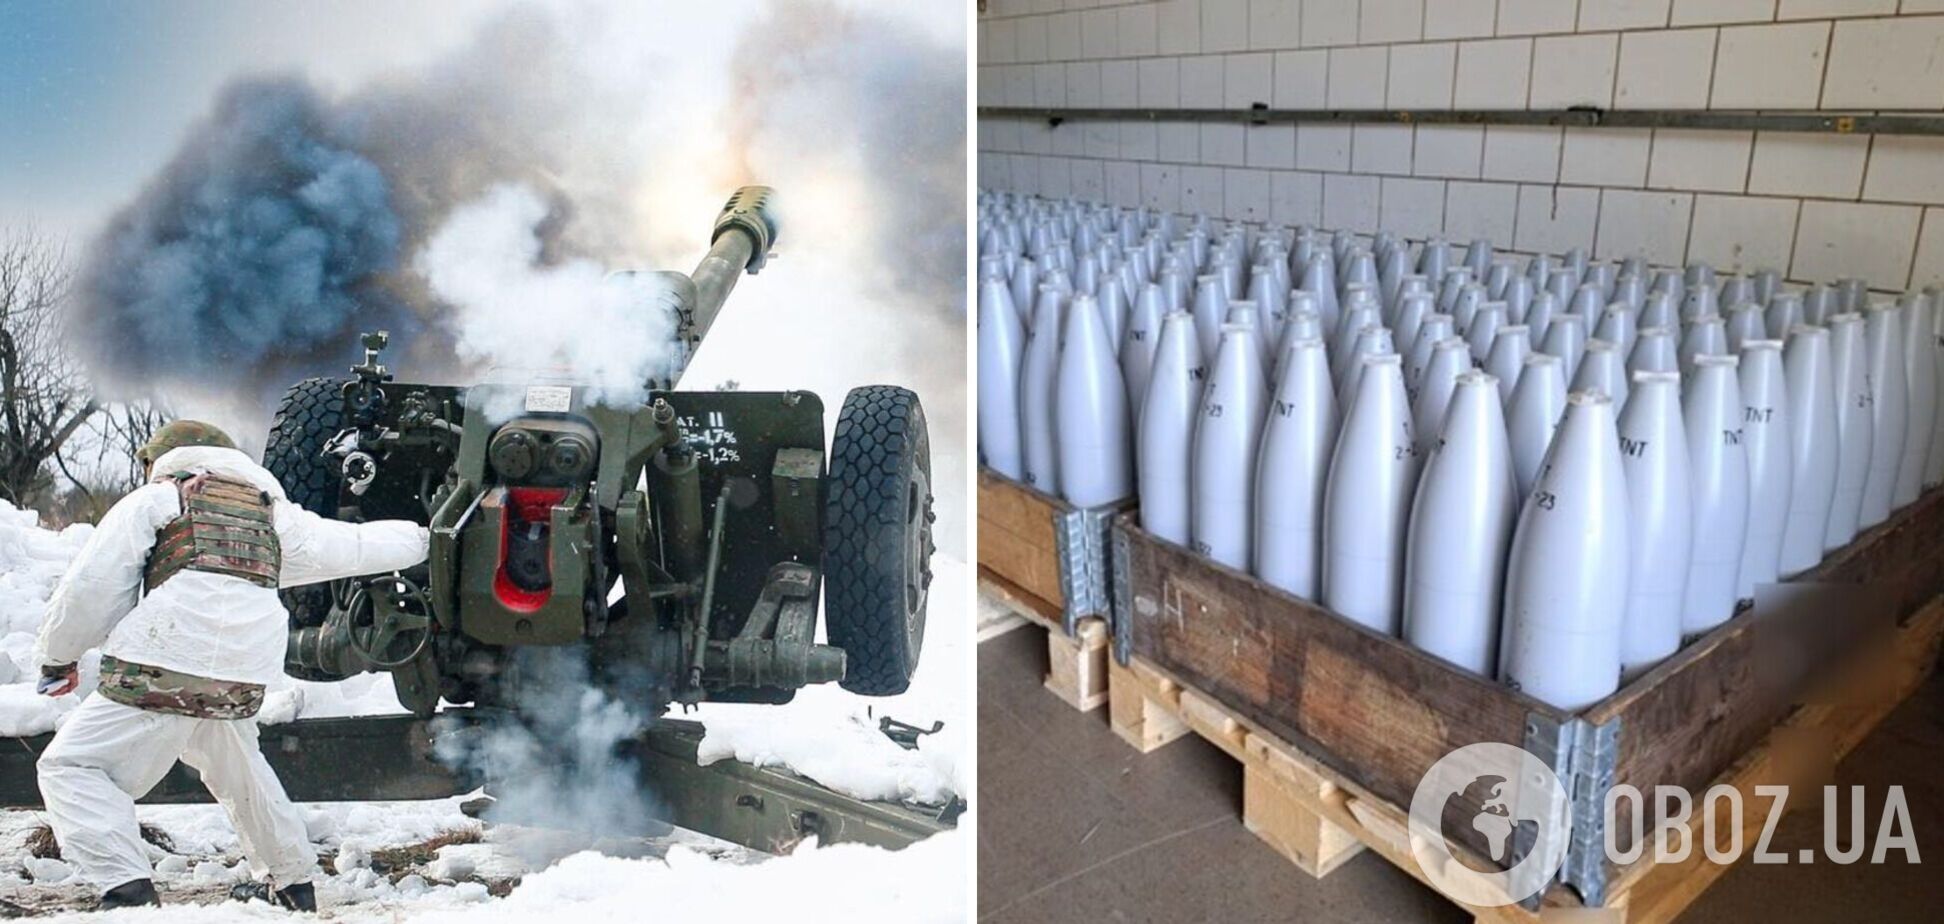 Чехия предлагает покупать снаряды для Украины за пределами ЕС – Politico